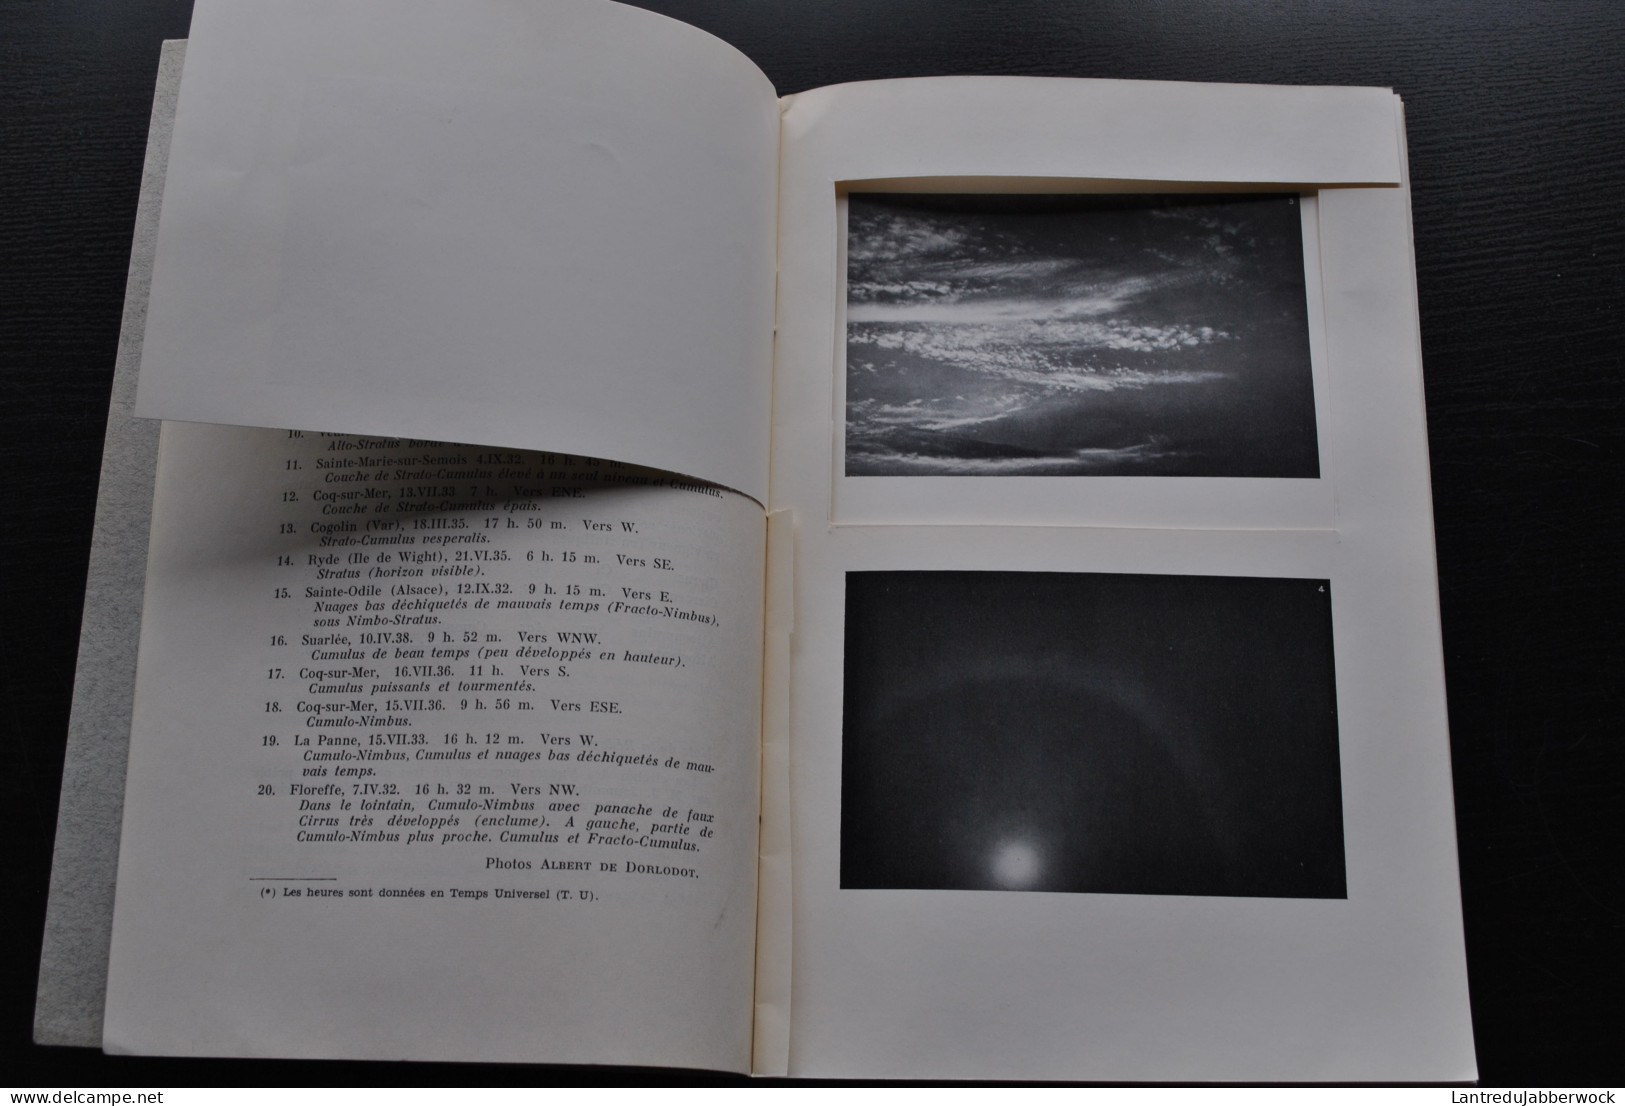 Atlas Des Nuages Extrait Du Bulletin Ciel Et Terre N°4 Avril 1940 ATTENTION INCOMPLET Astronomie RARE Dorlodot Albert - Astronomia